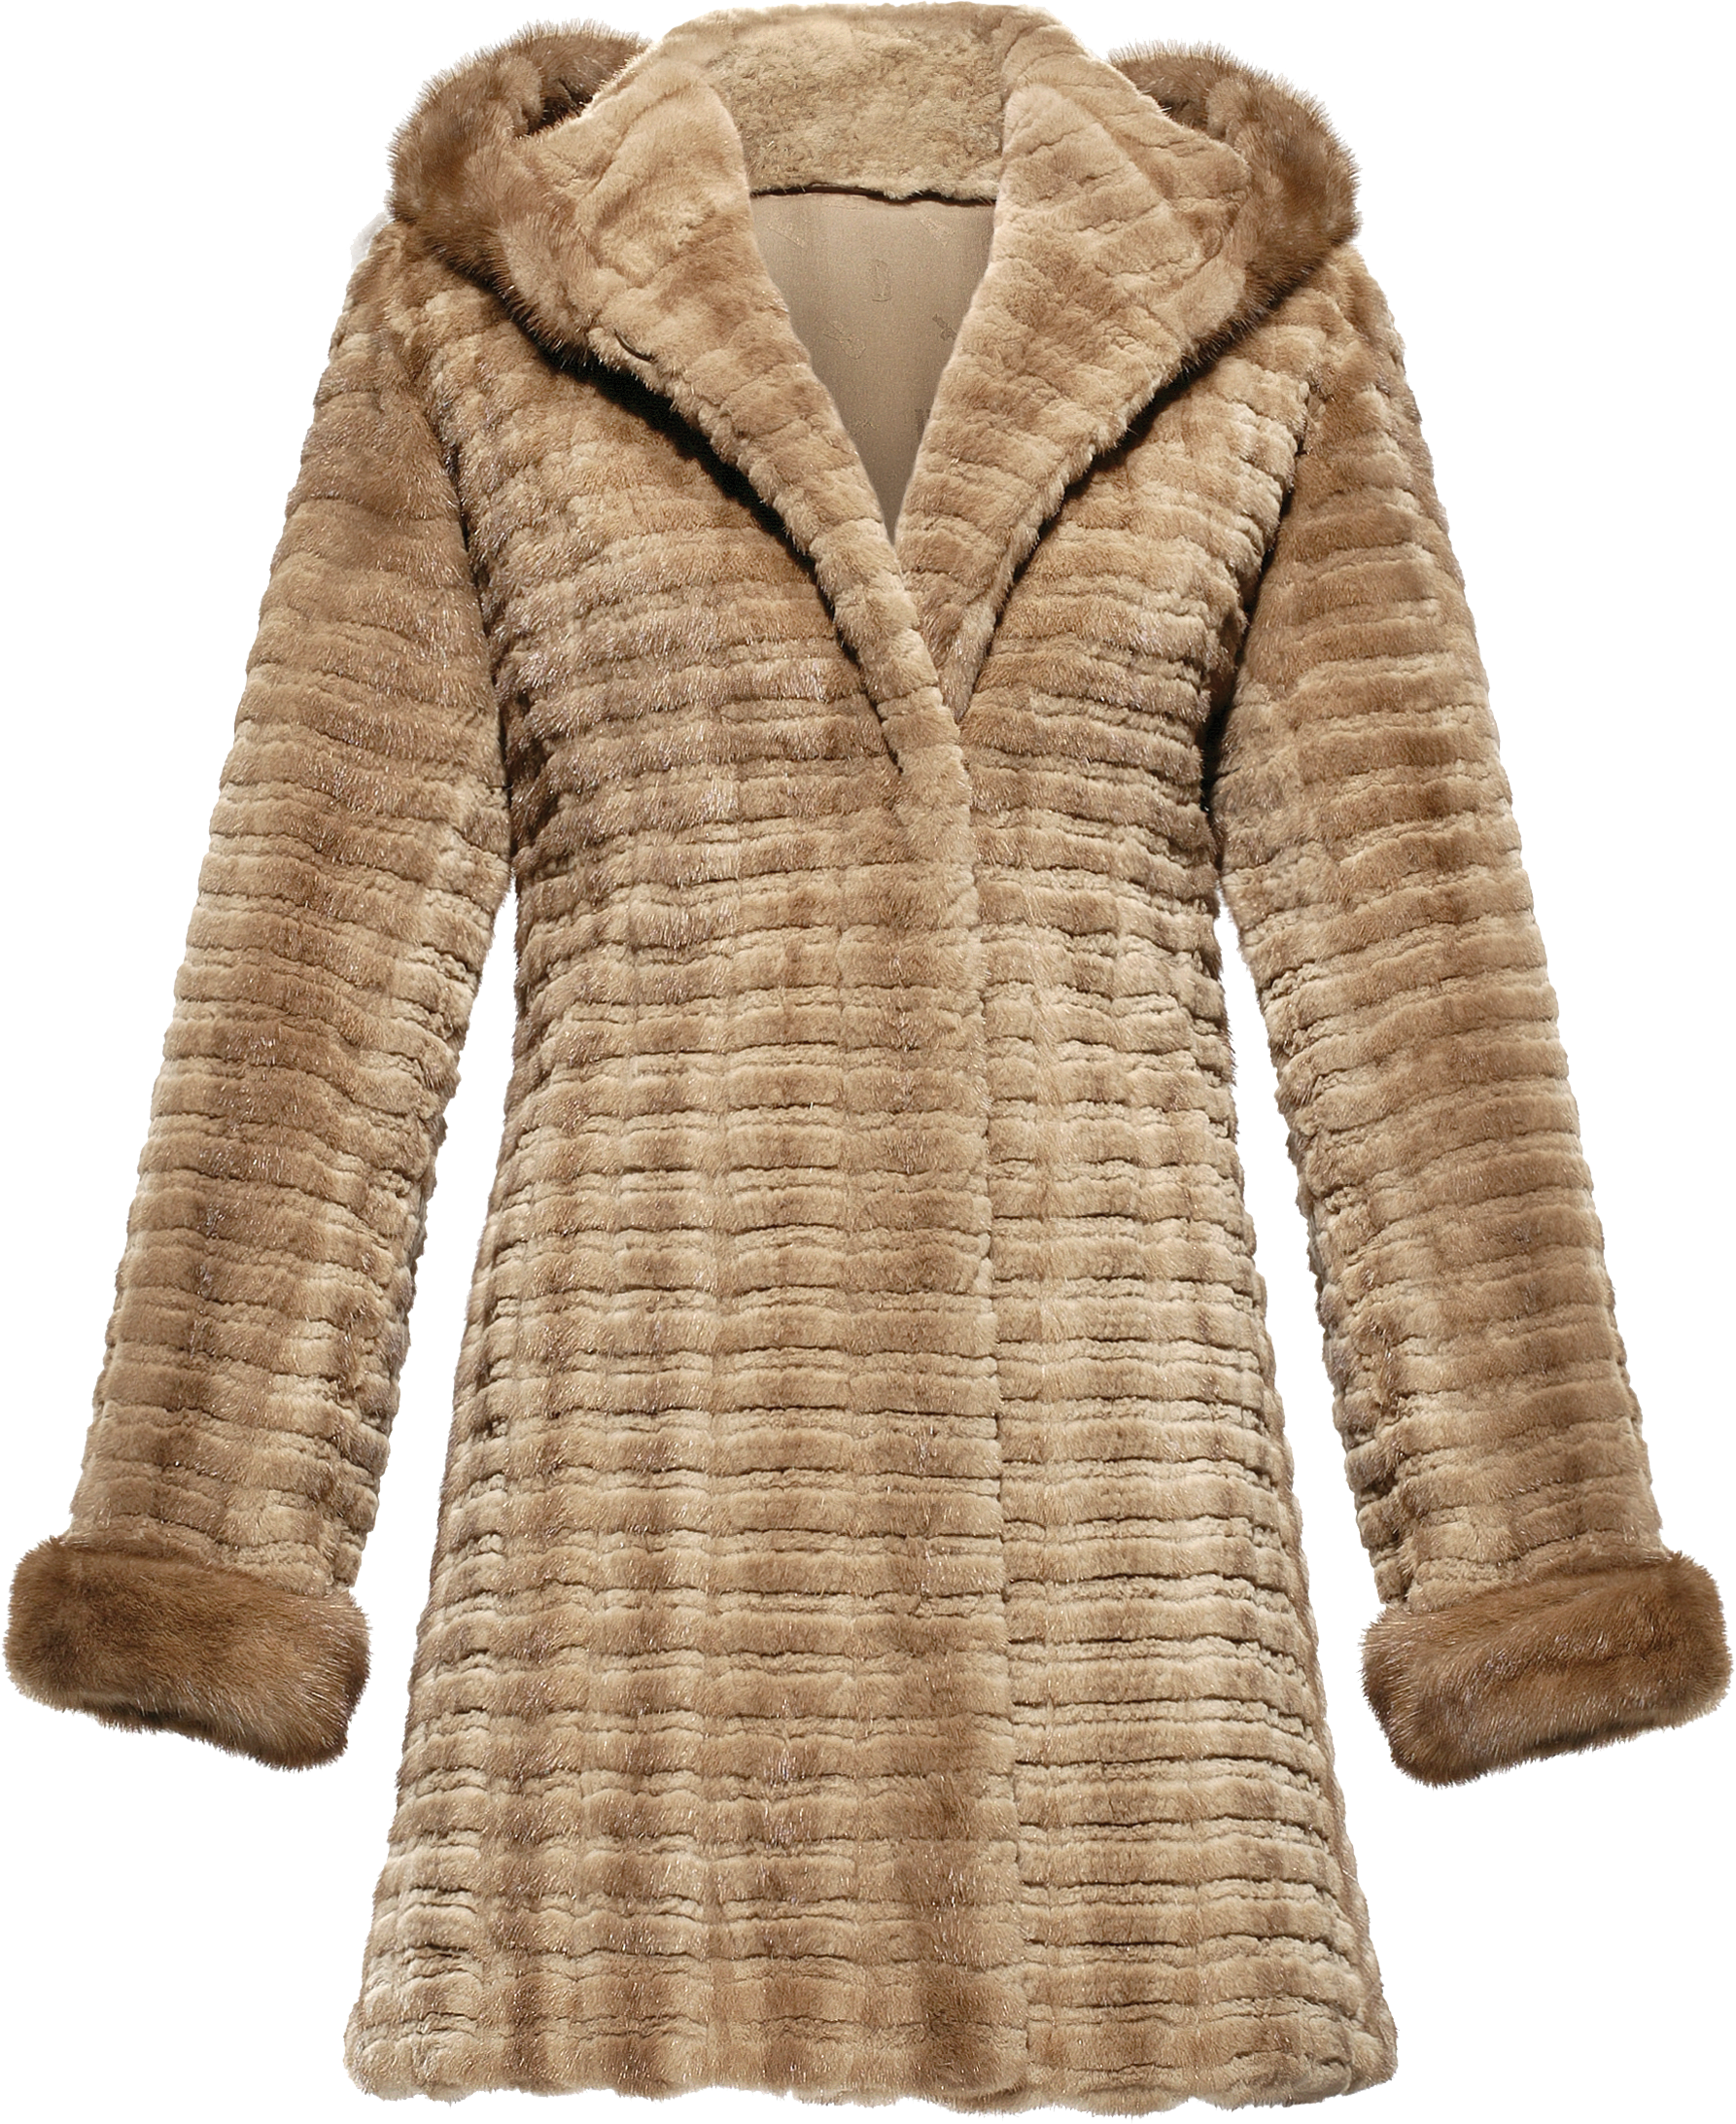 Fur coat PNG image free Download 